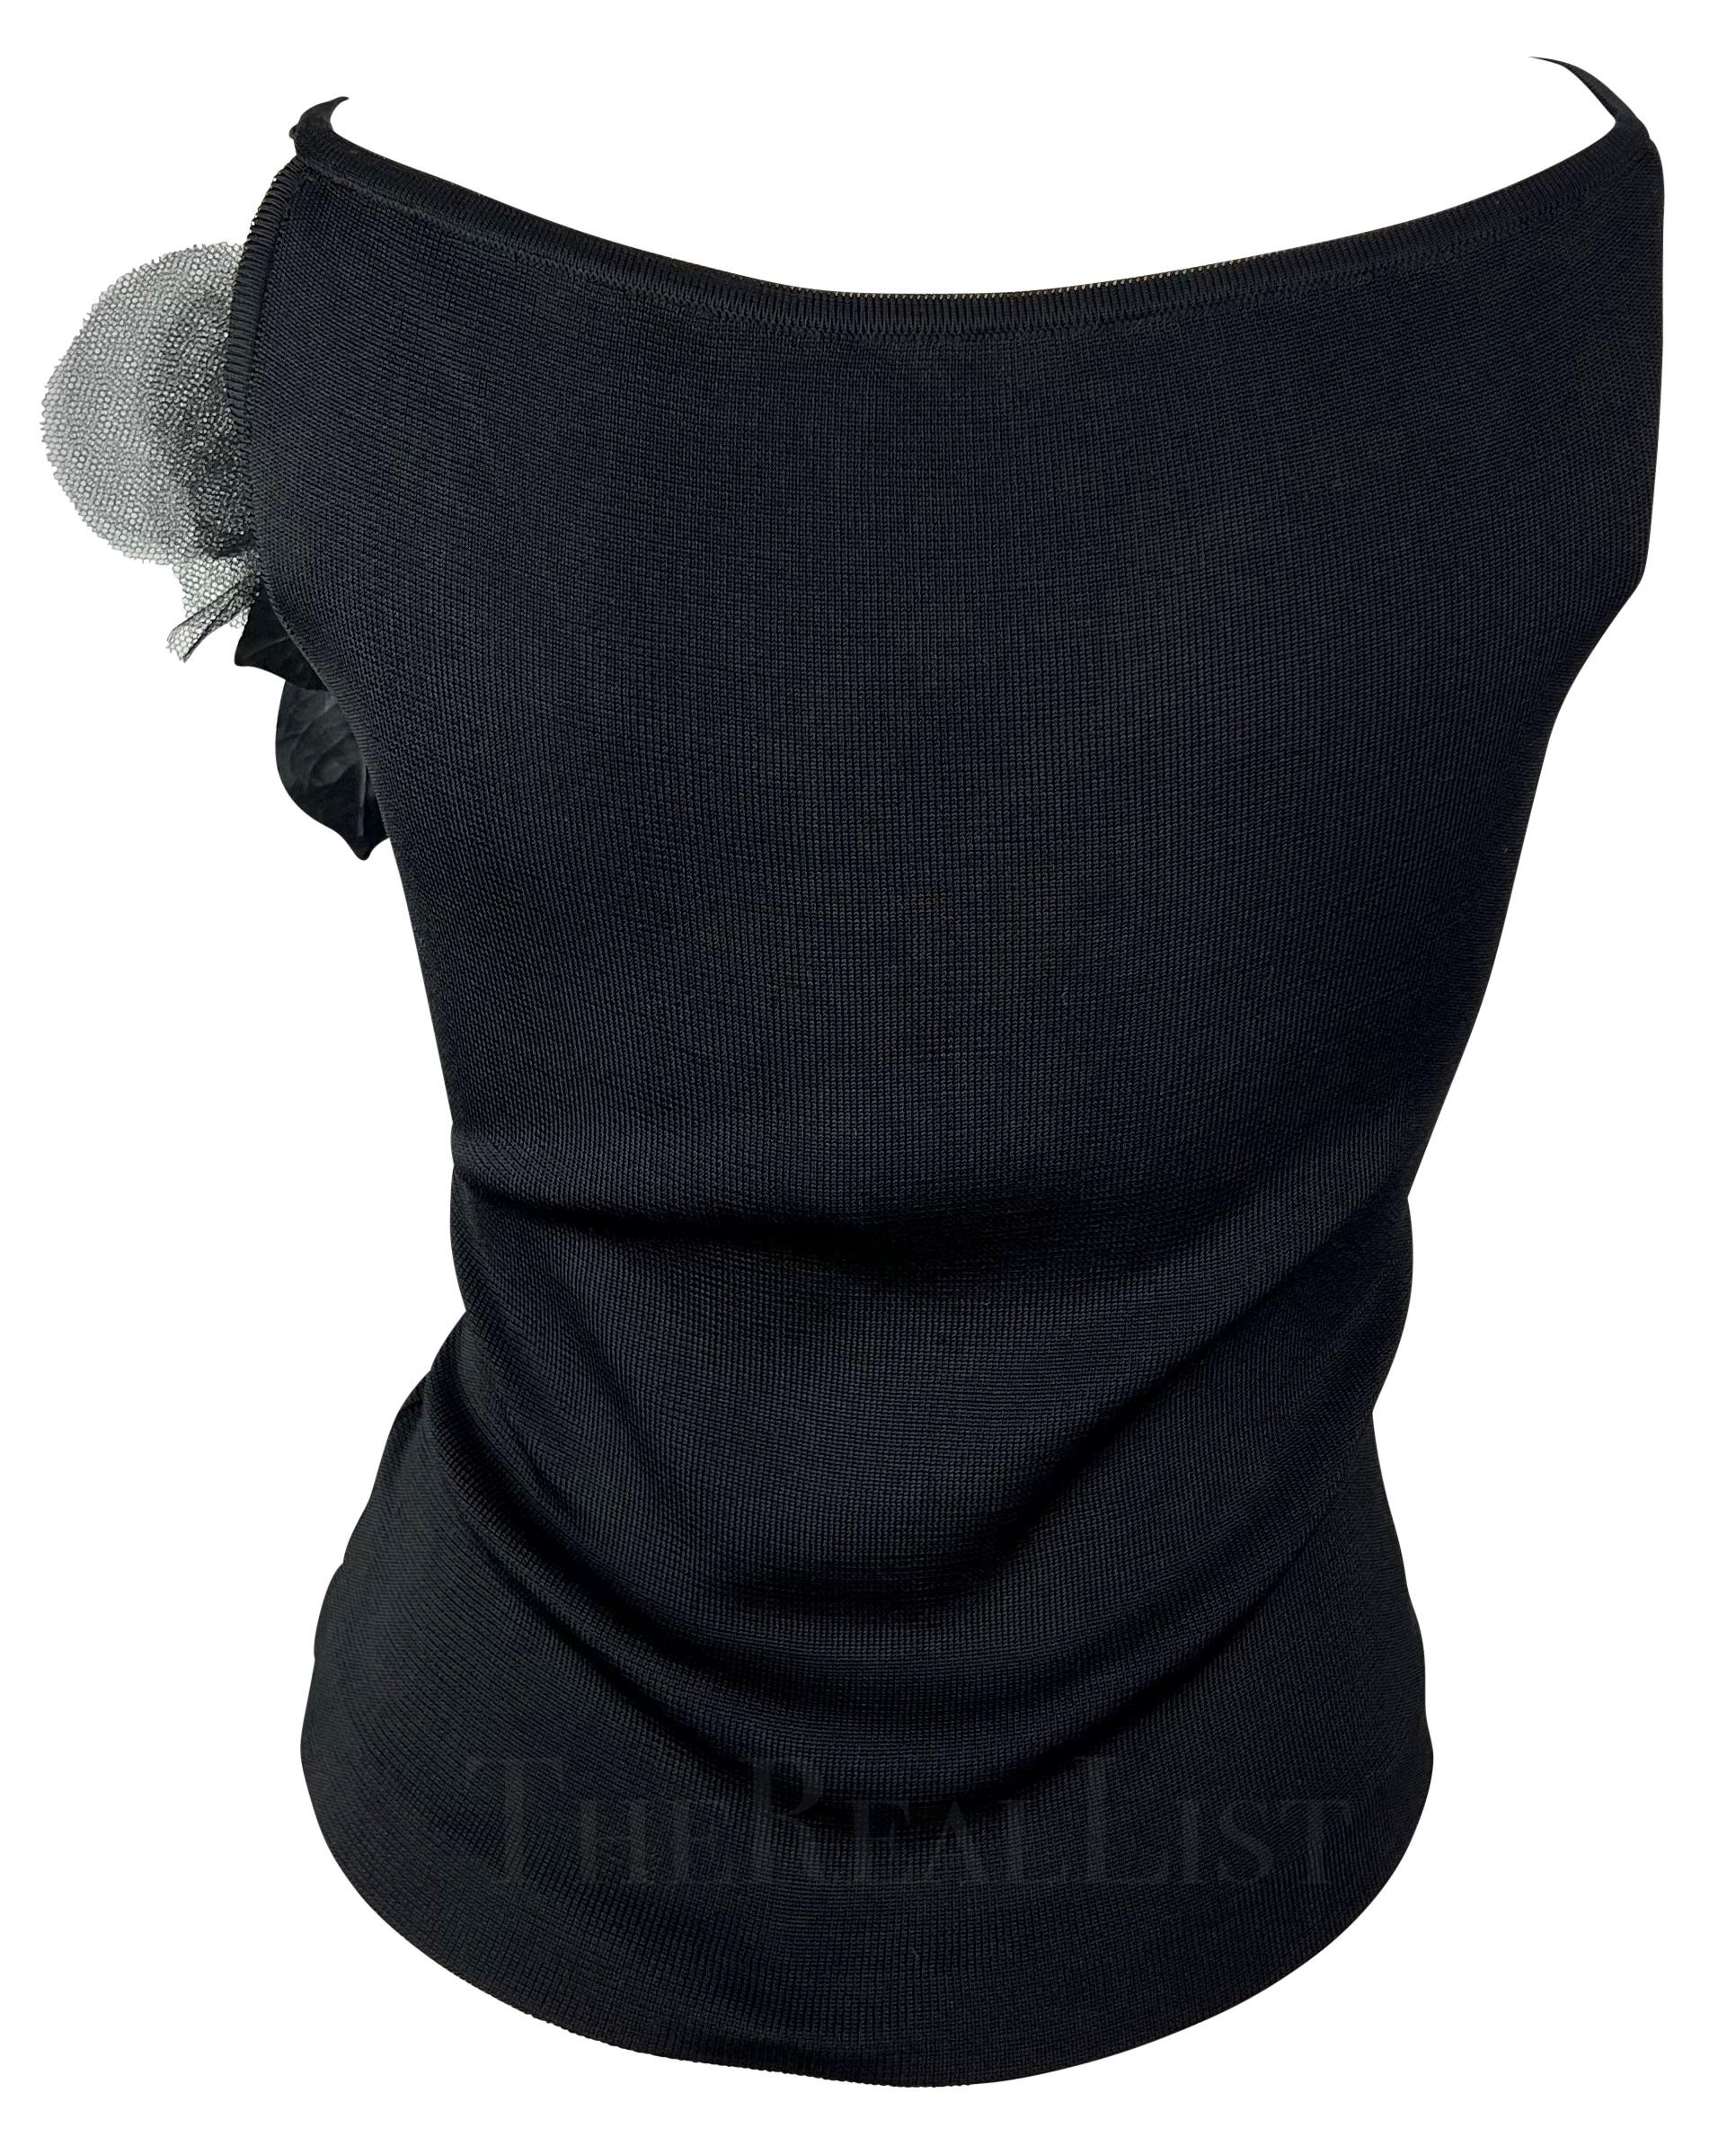 Women's 1990s Yves Saint Laurent Black Knit Floral Applique Tank Top For Sale